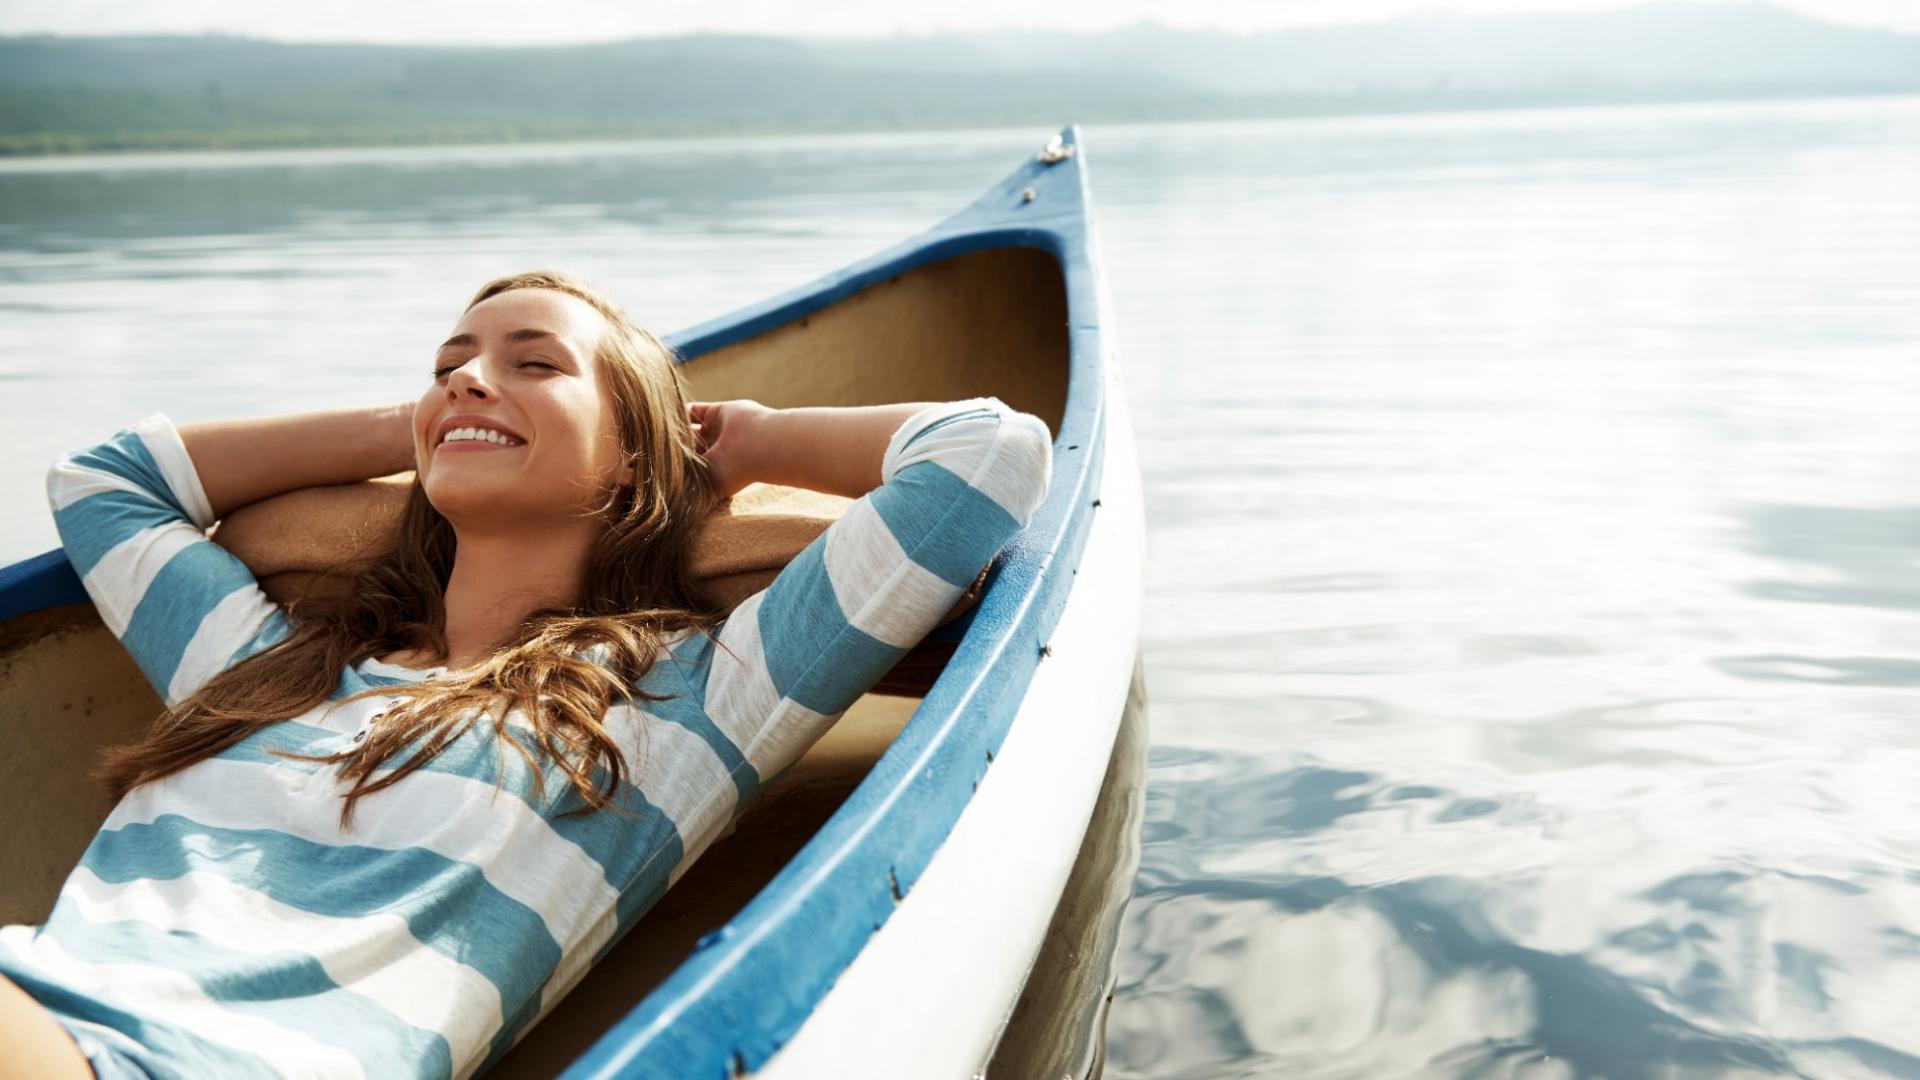 Eine junge Frau liegt entspannt in einem Boot, das auf einem See schwimmt.